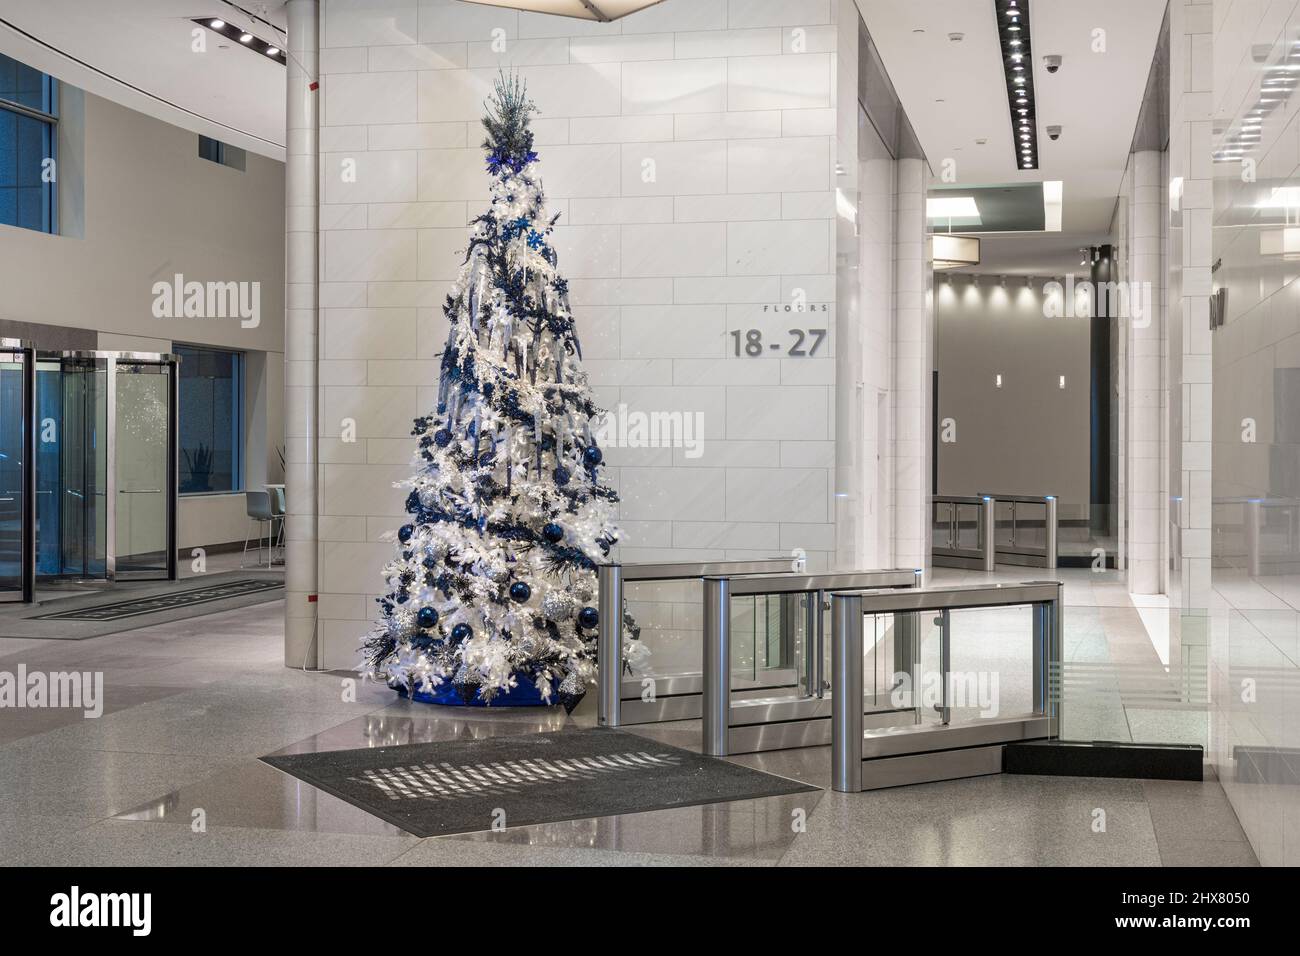 Arbre de Noël dans le hall de l'immeuble de bureaux Banque D'Images